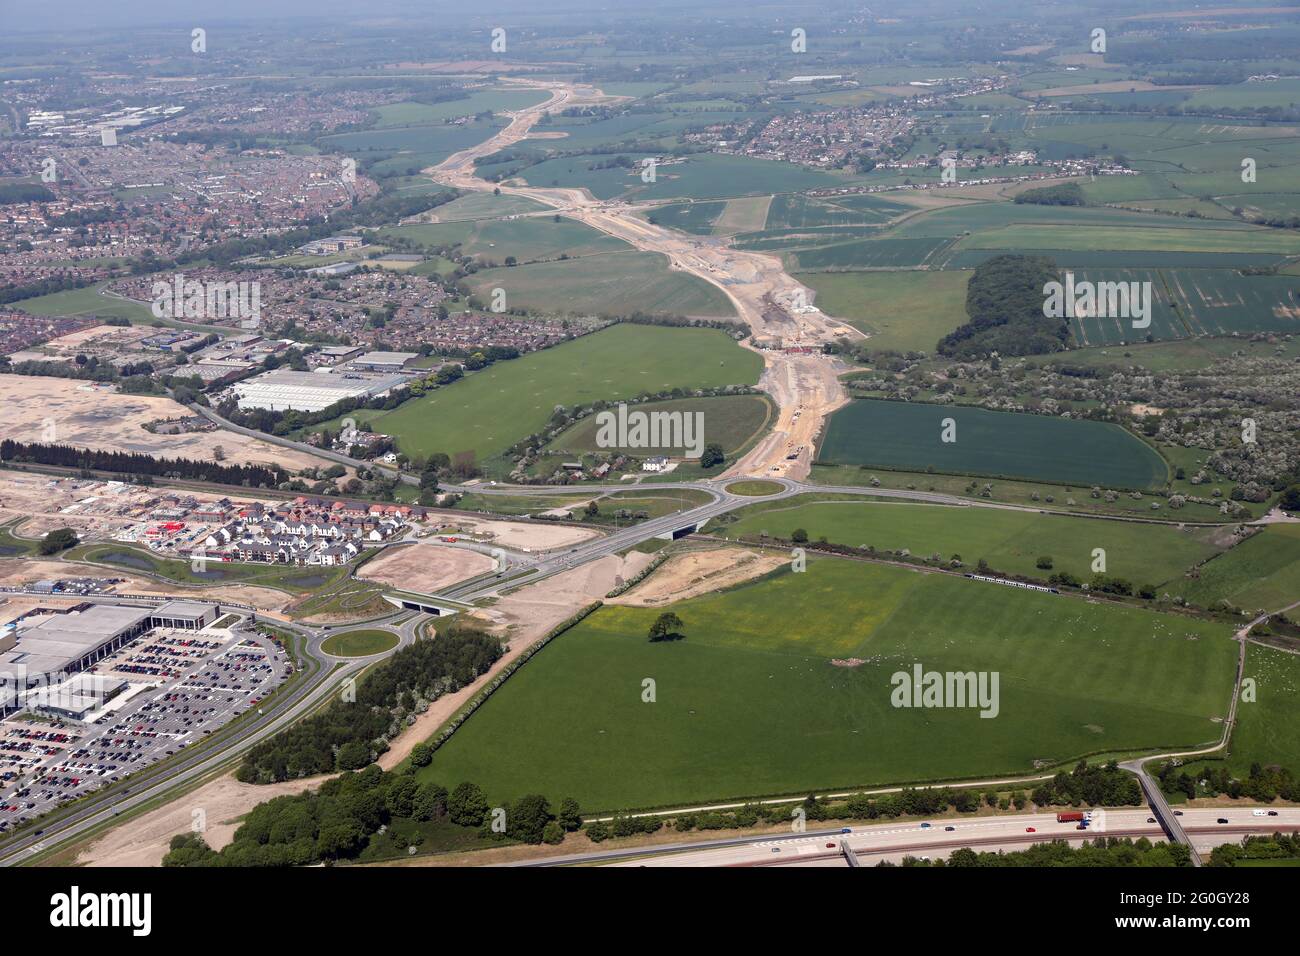 Vista aerea della circonvallazione di Leeds Orbital in costruzione, giugno 2021. Questa immagine dal punto più a sud dell'autostrada M1 che guarda a nord. Foto Stock